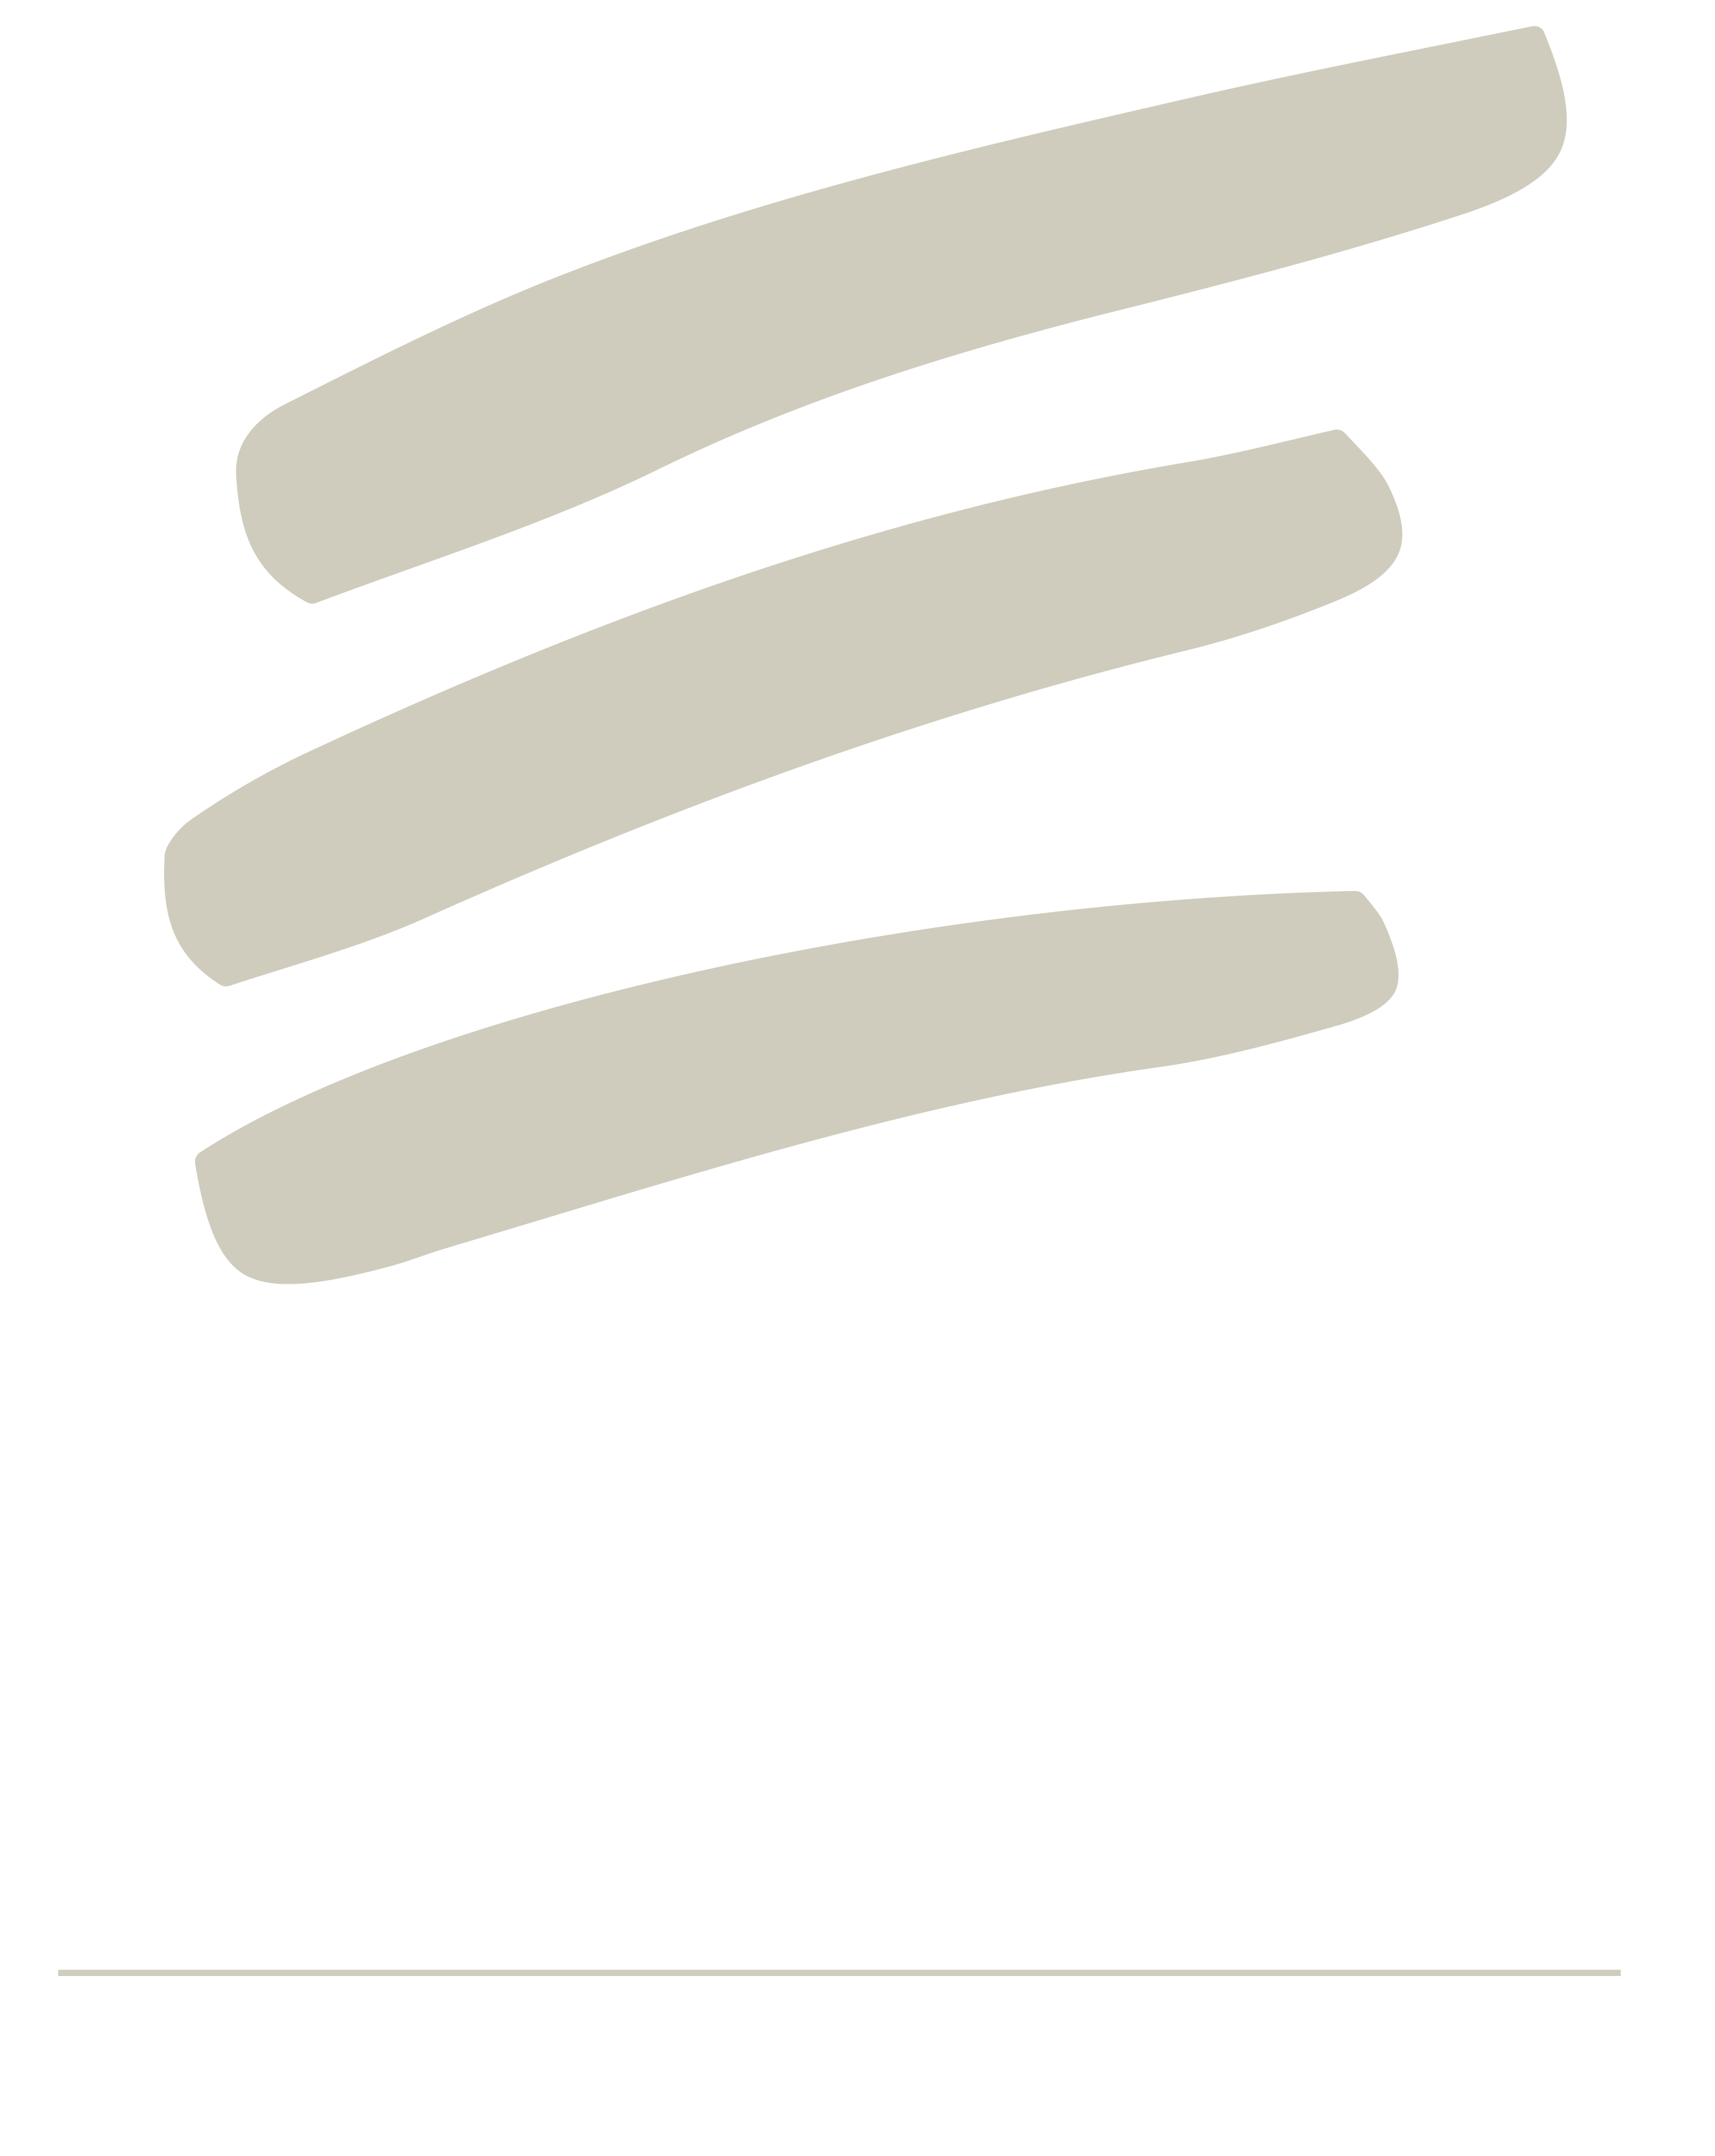 Echelon Management Group